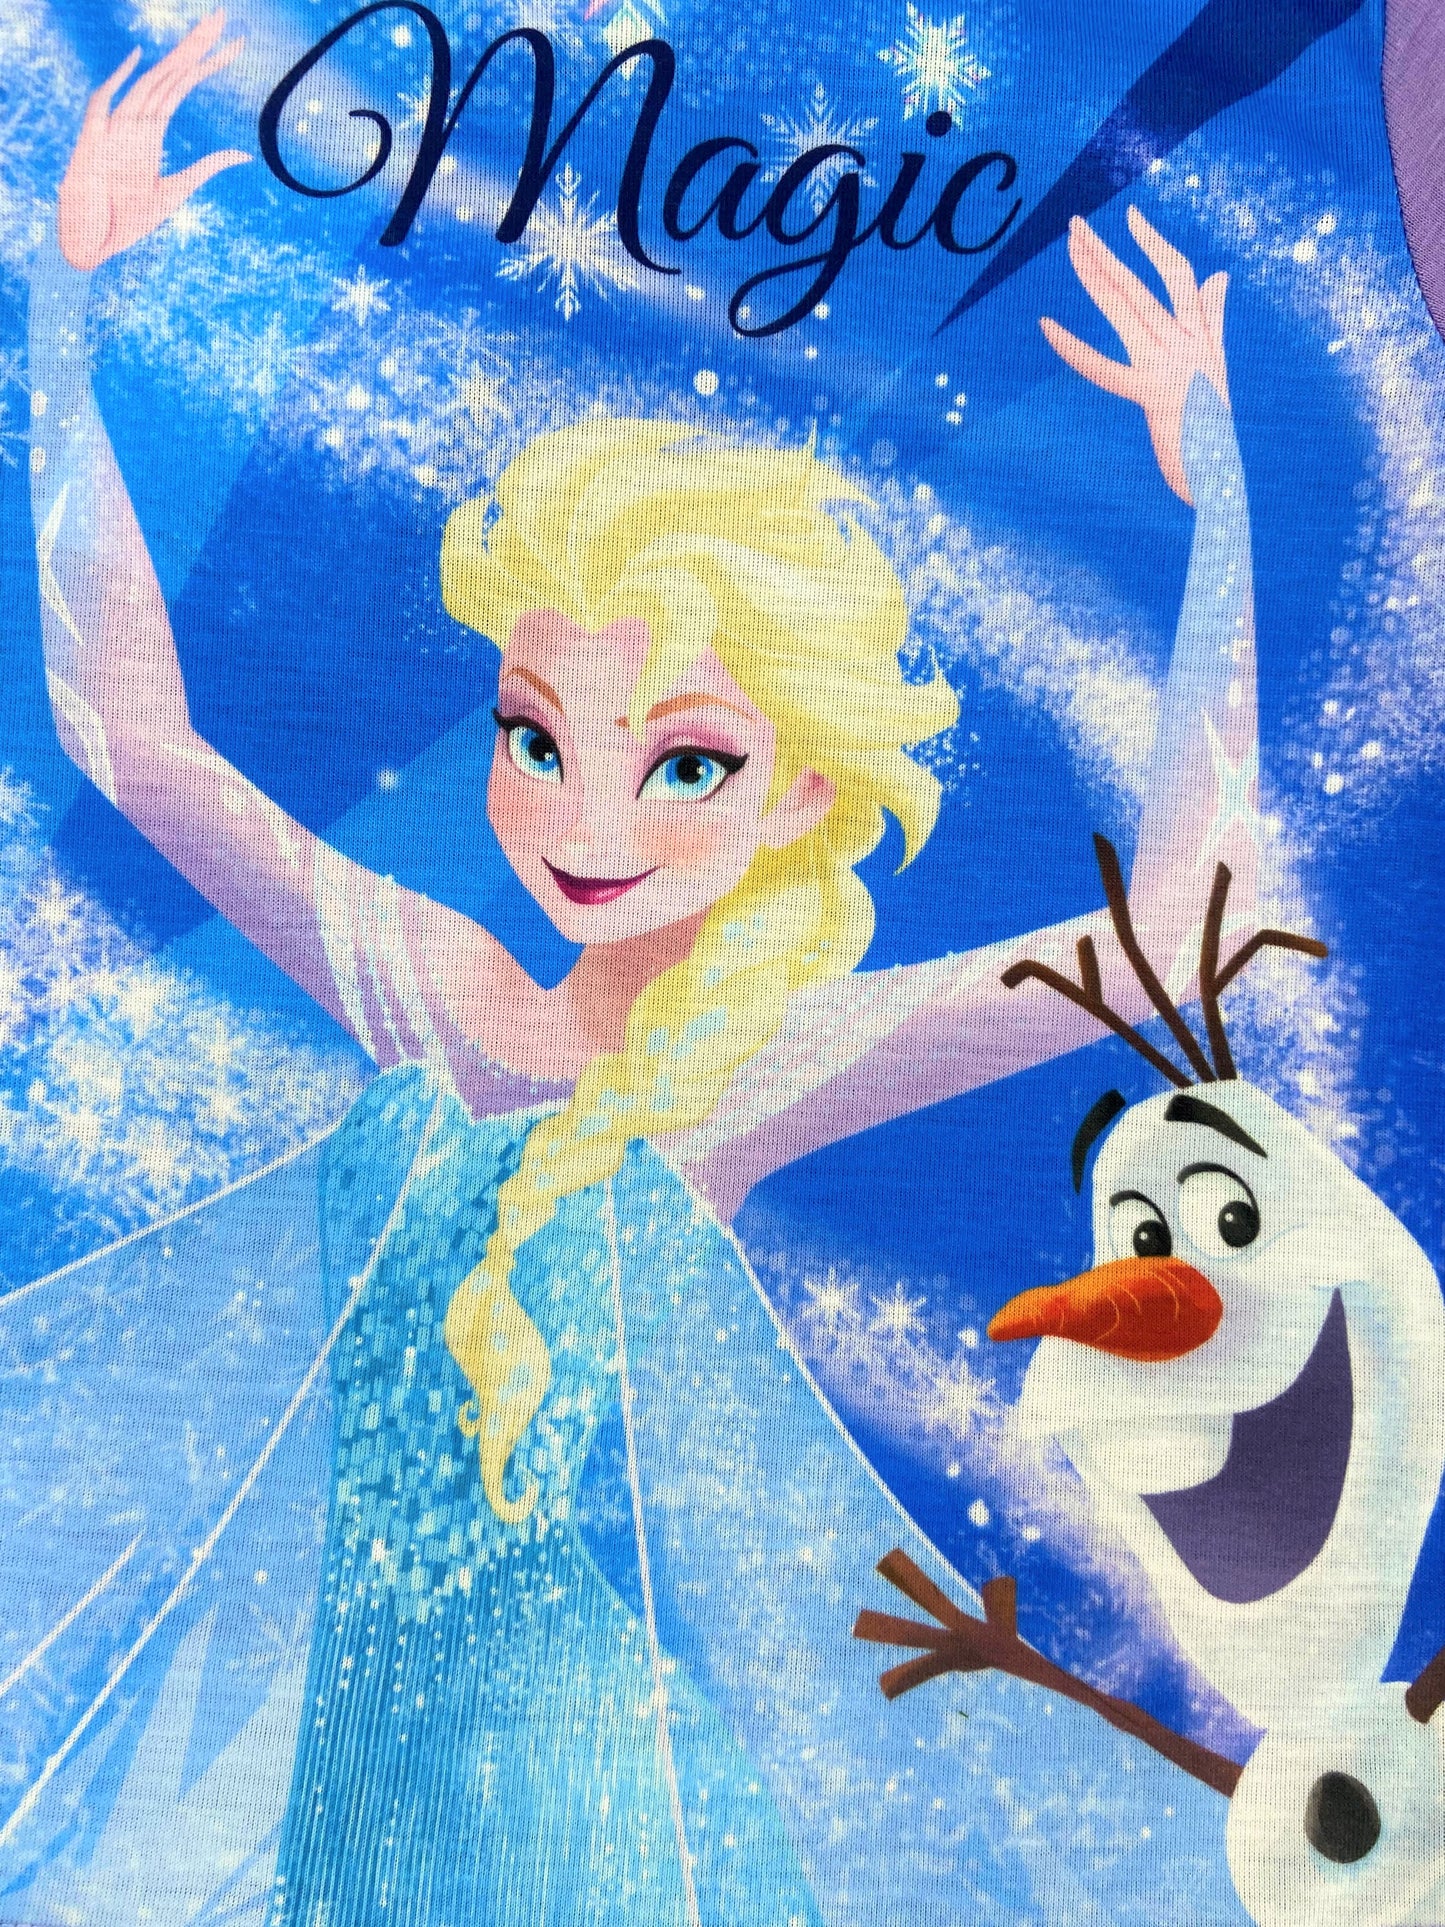 Disney Frozen "Elsa Magic" Shortie Girl's 2 Piece Pyjama Set